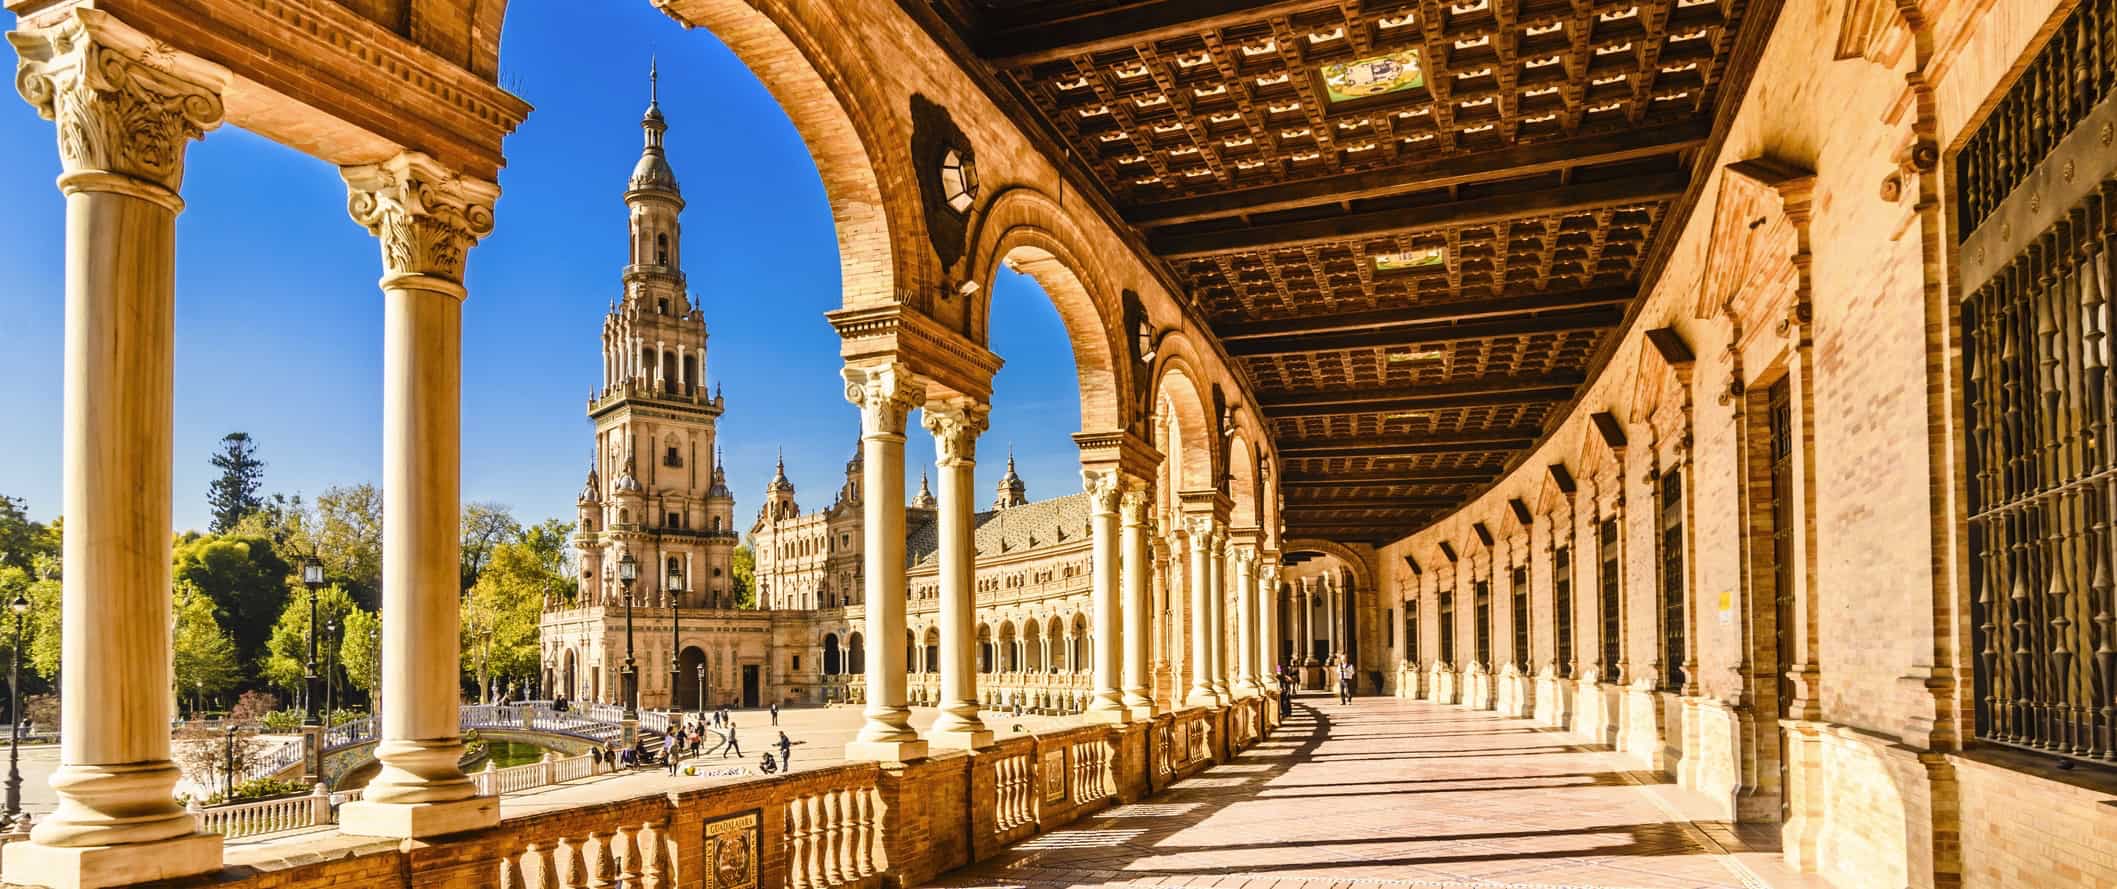 Enorme palácio histórico em Sevilha, Espanha